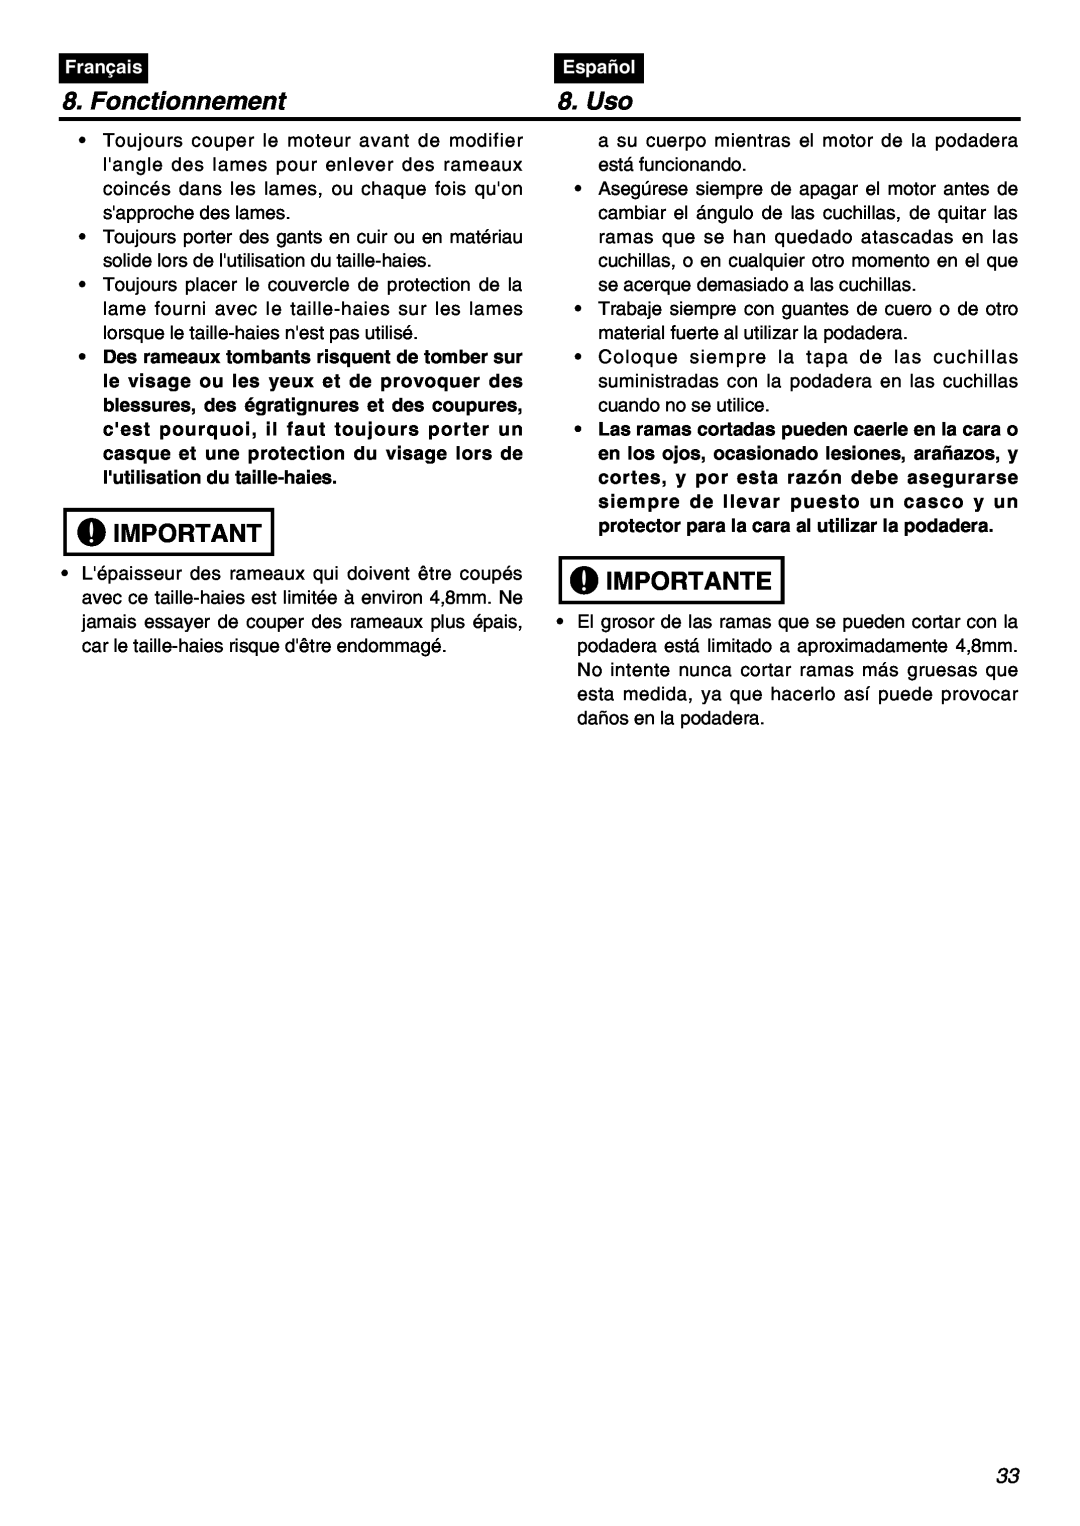 RedMax SRTZ2401F manual Fonctionnement, Uso, Importante, Français, Español 